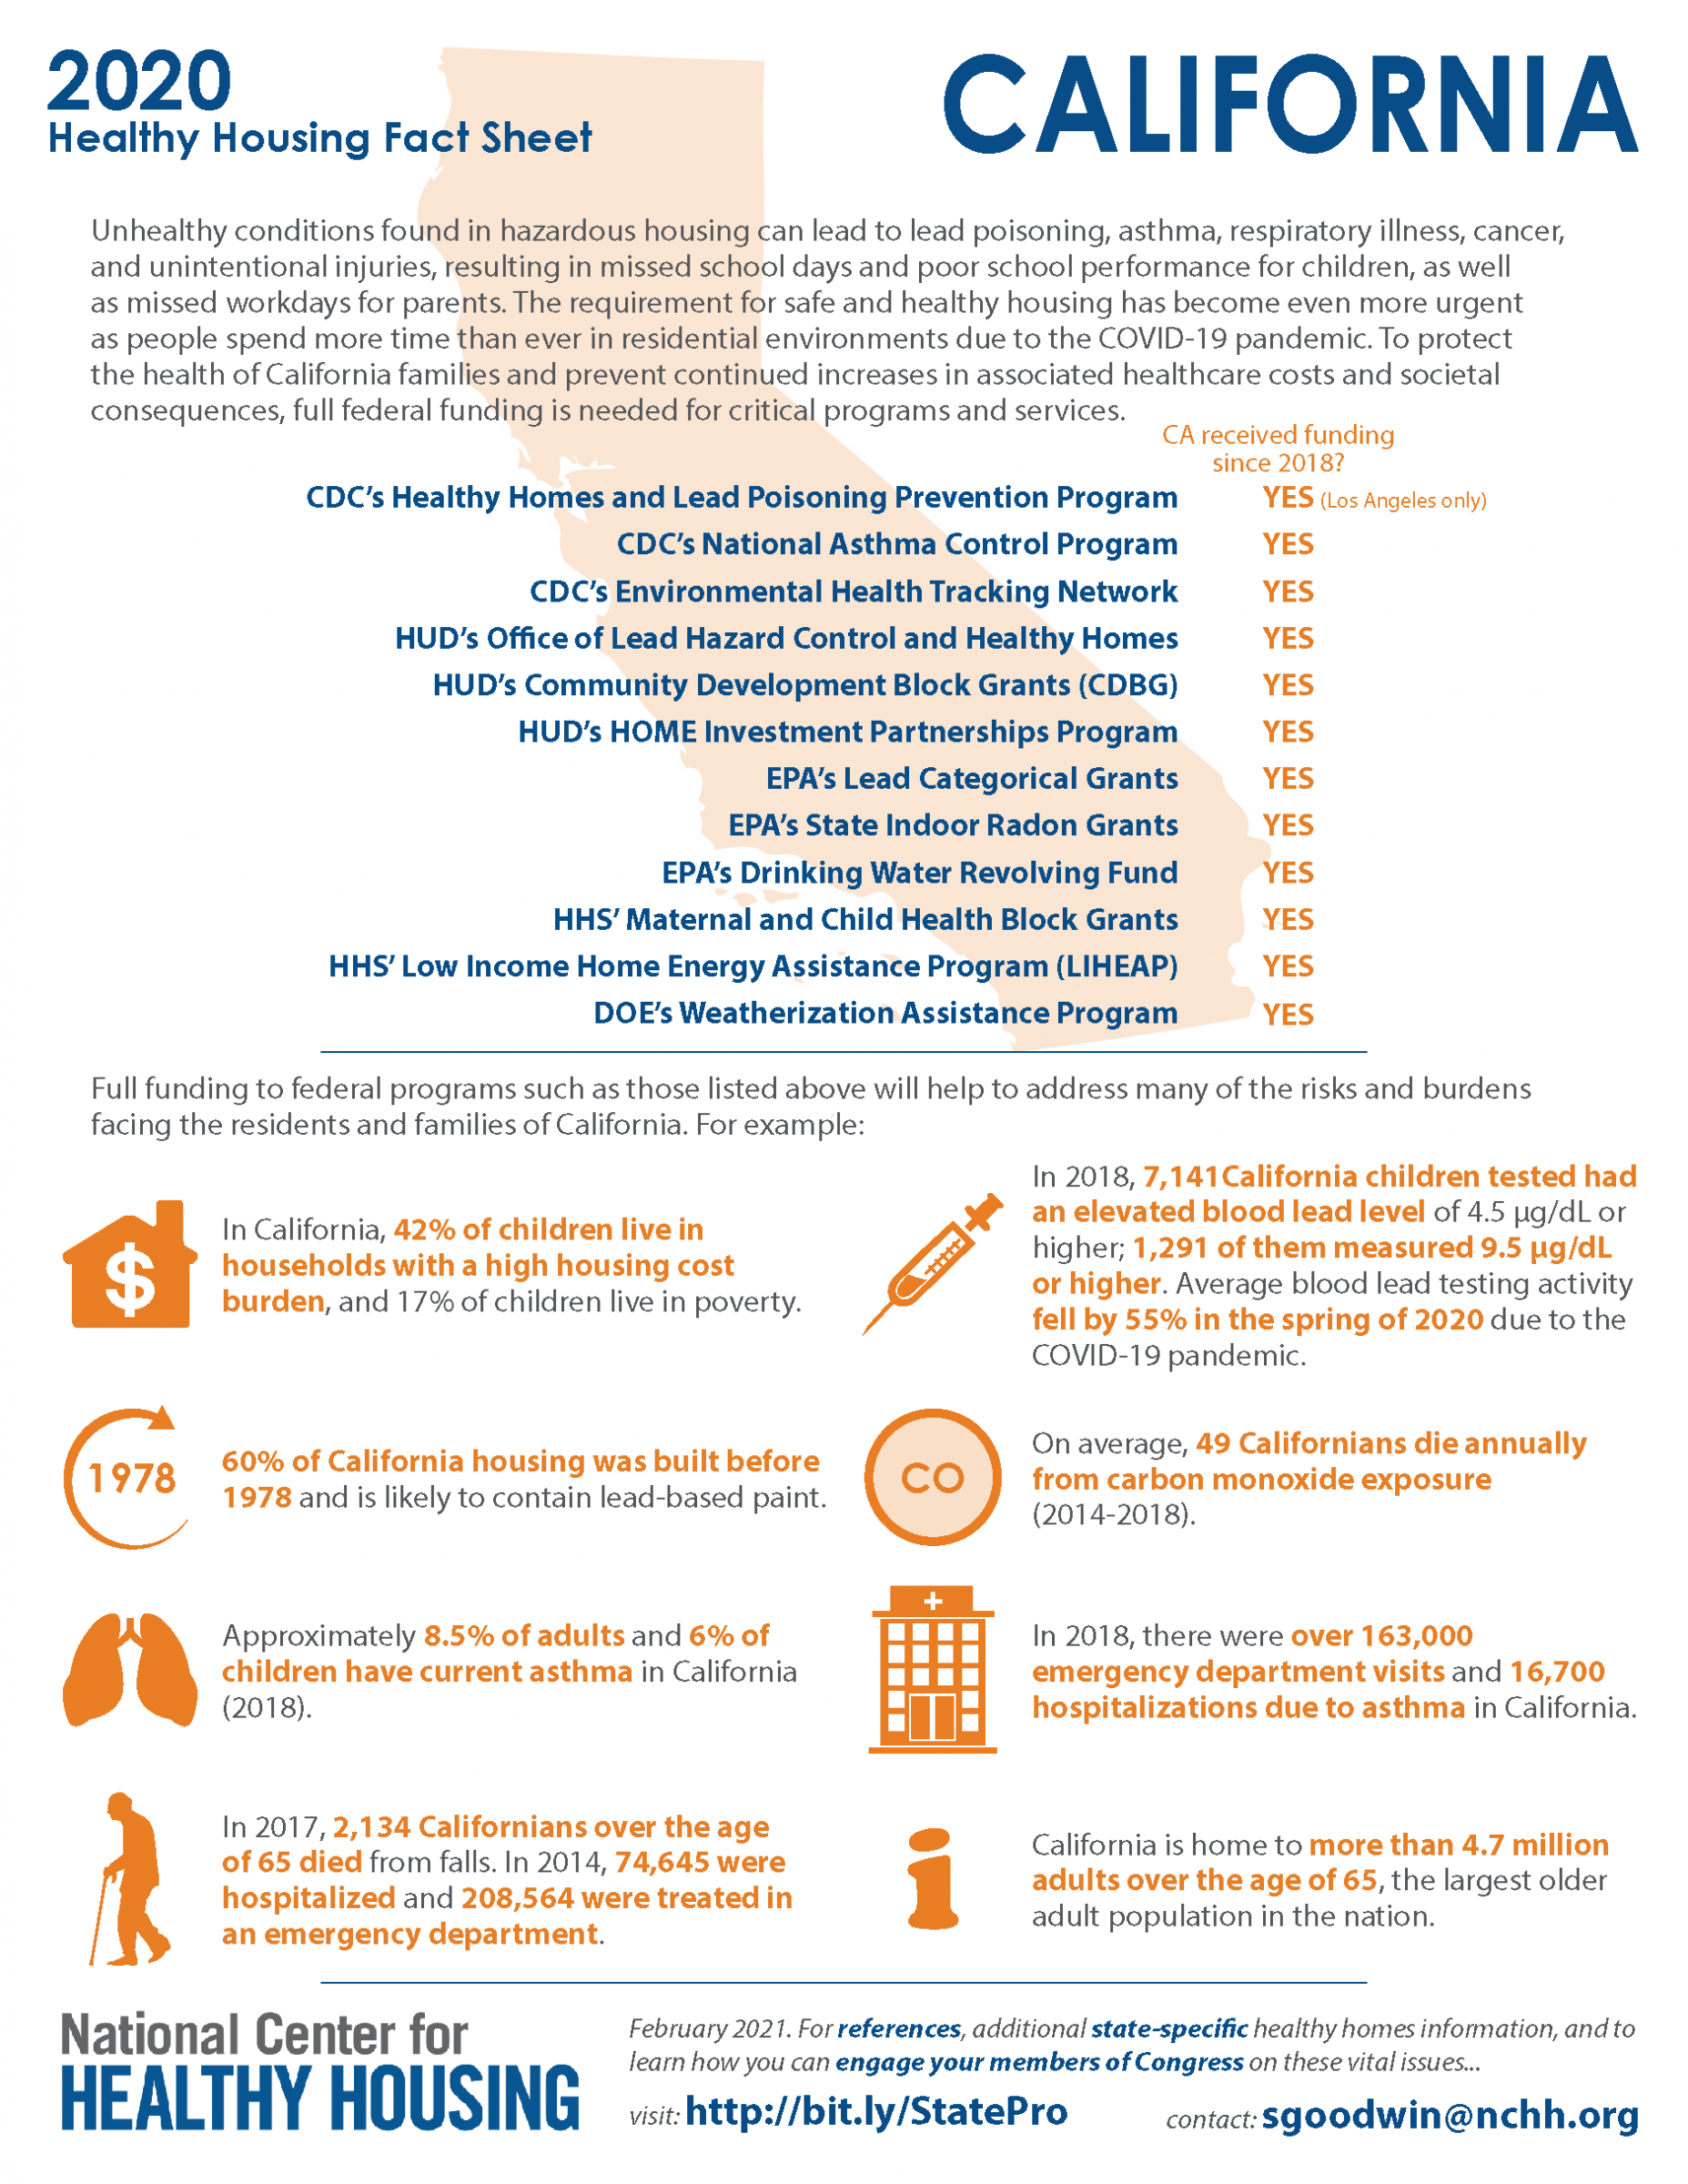 Healthy Housing Fact Sheet - California 2020